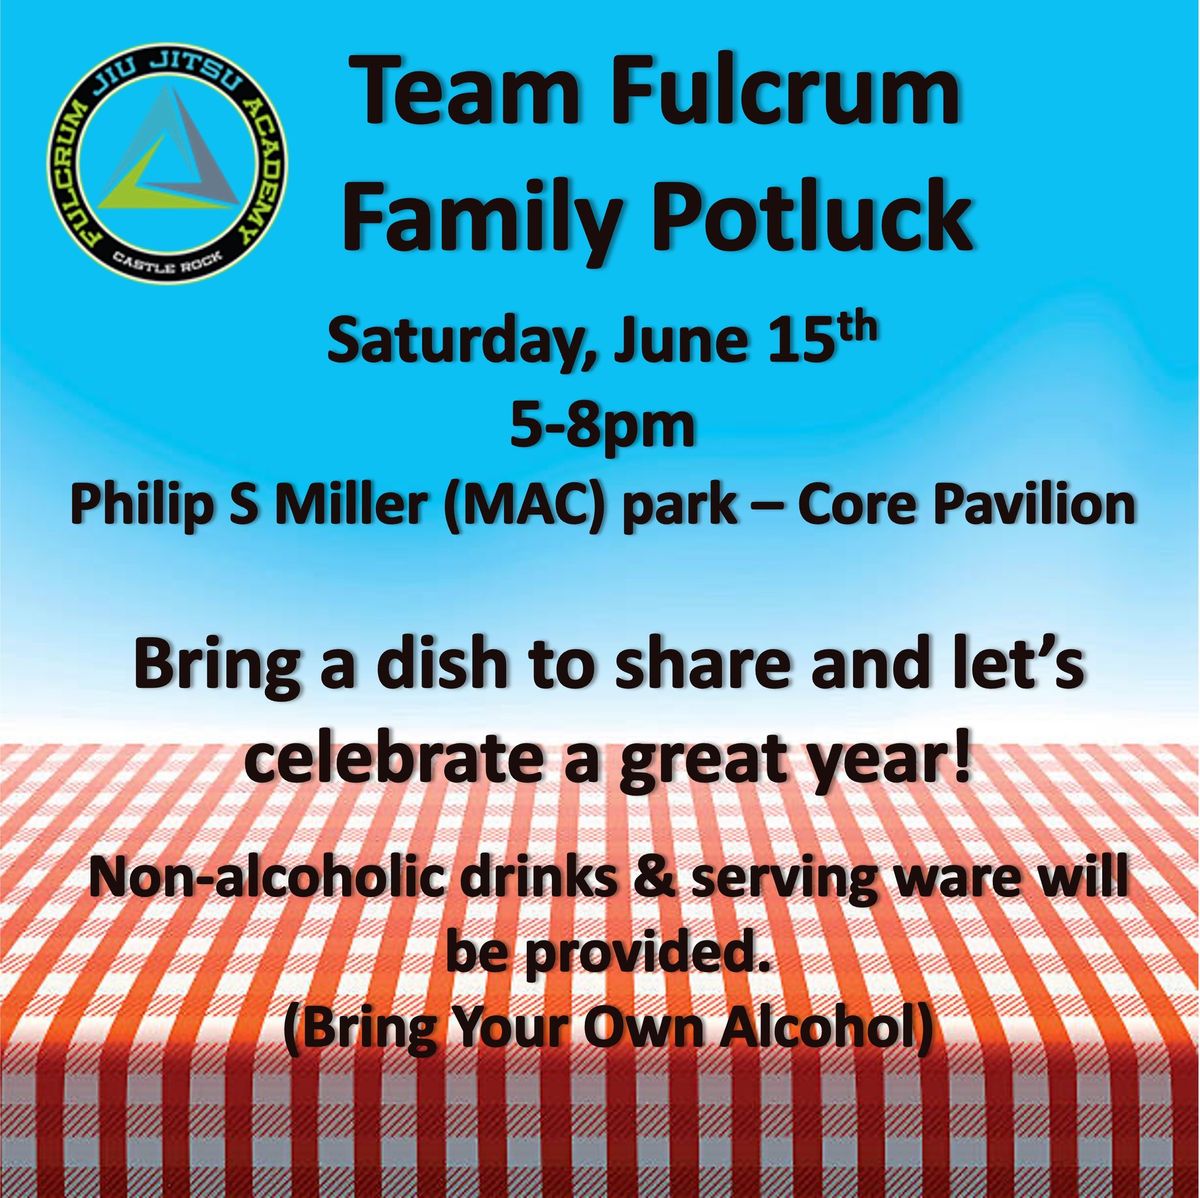 Team Fulcrum Family Potluck